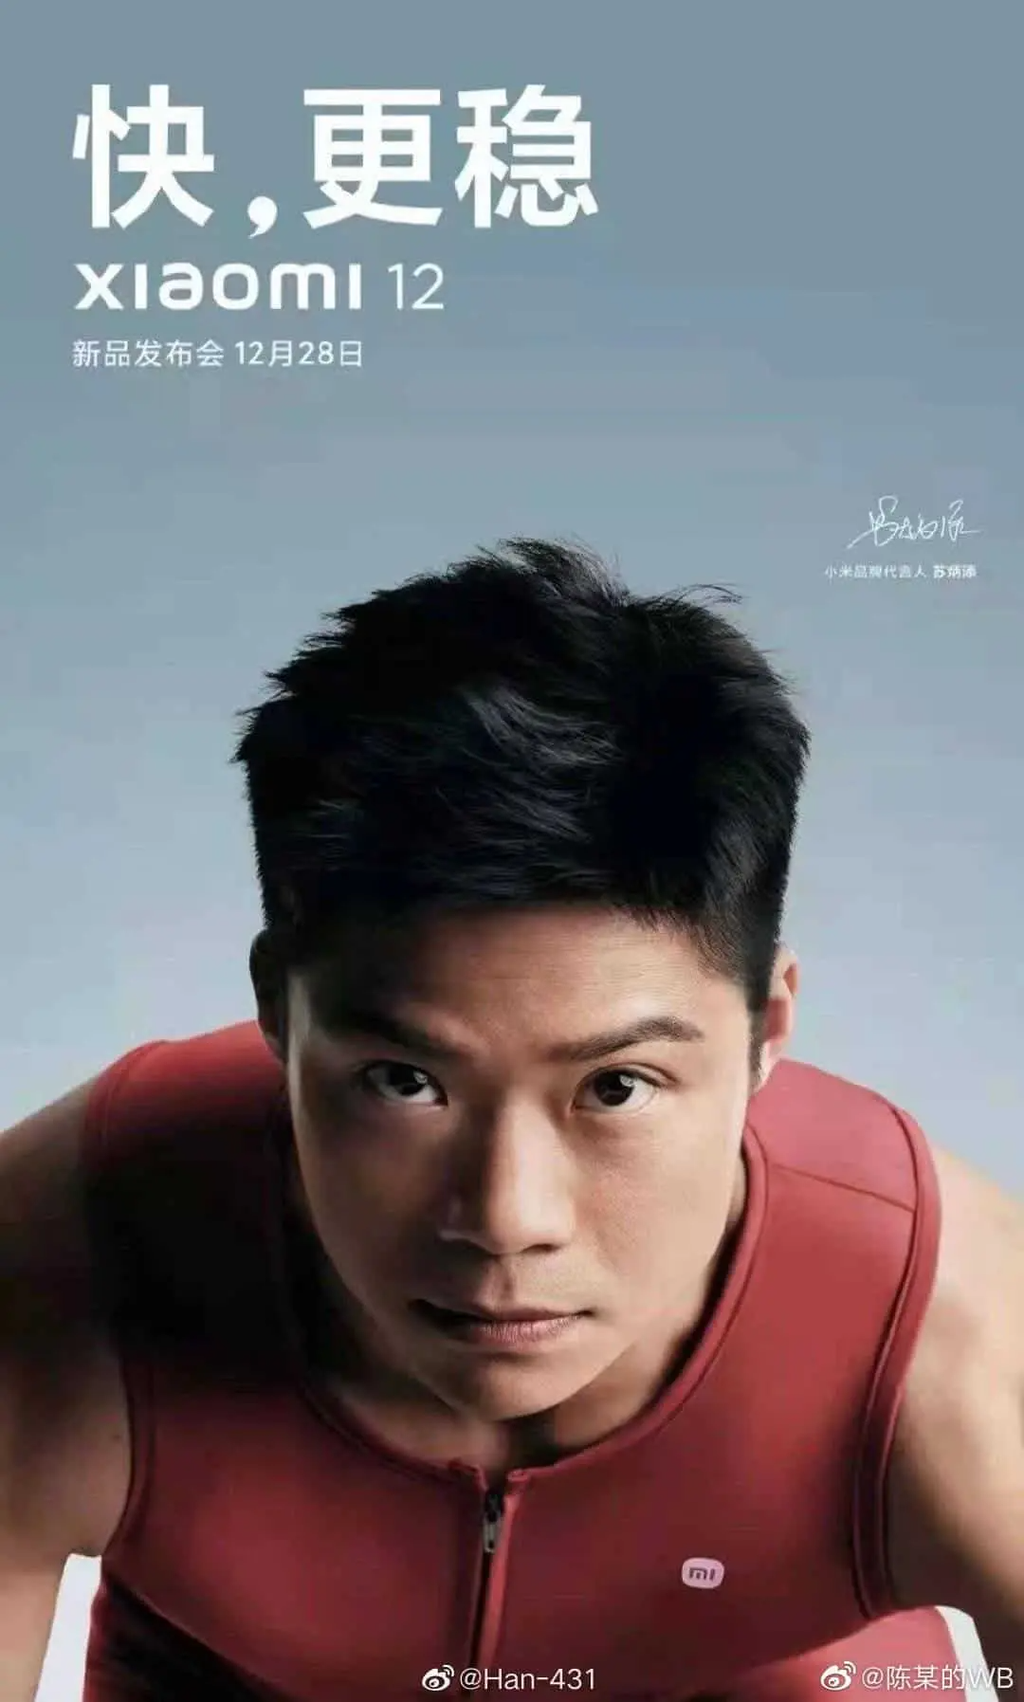 Suposto poster oficial revela data de anúncio do Xiaomi 12 (Imagem: Reprodução/Han-431)